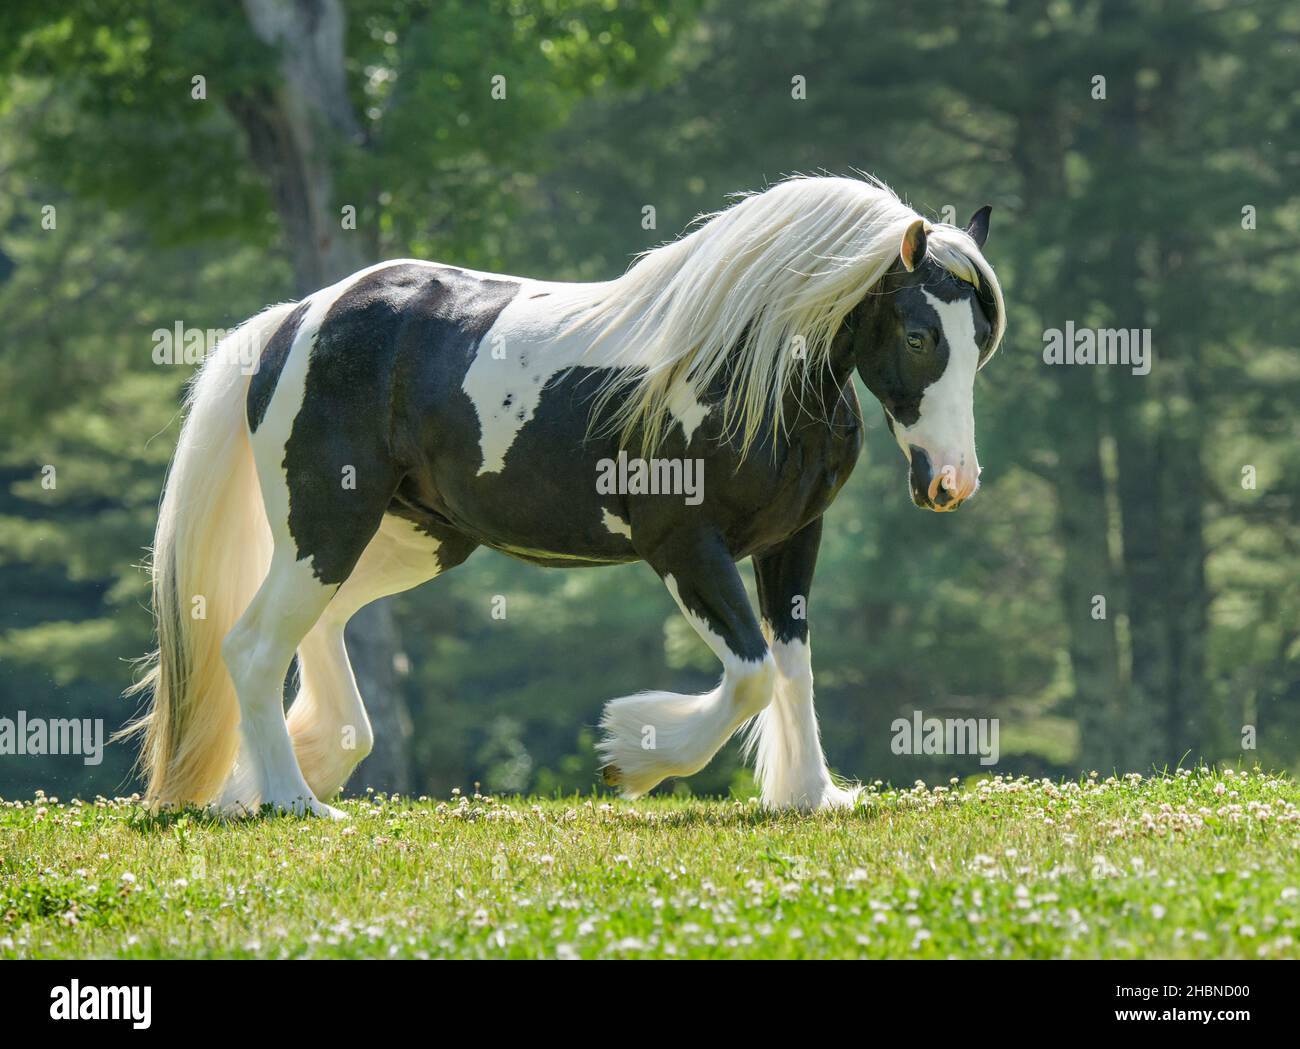 Gipsy Vanner La yegua del caballo trola a través del knoll de la hierba Foto de stock